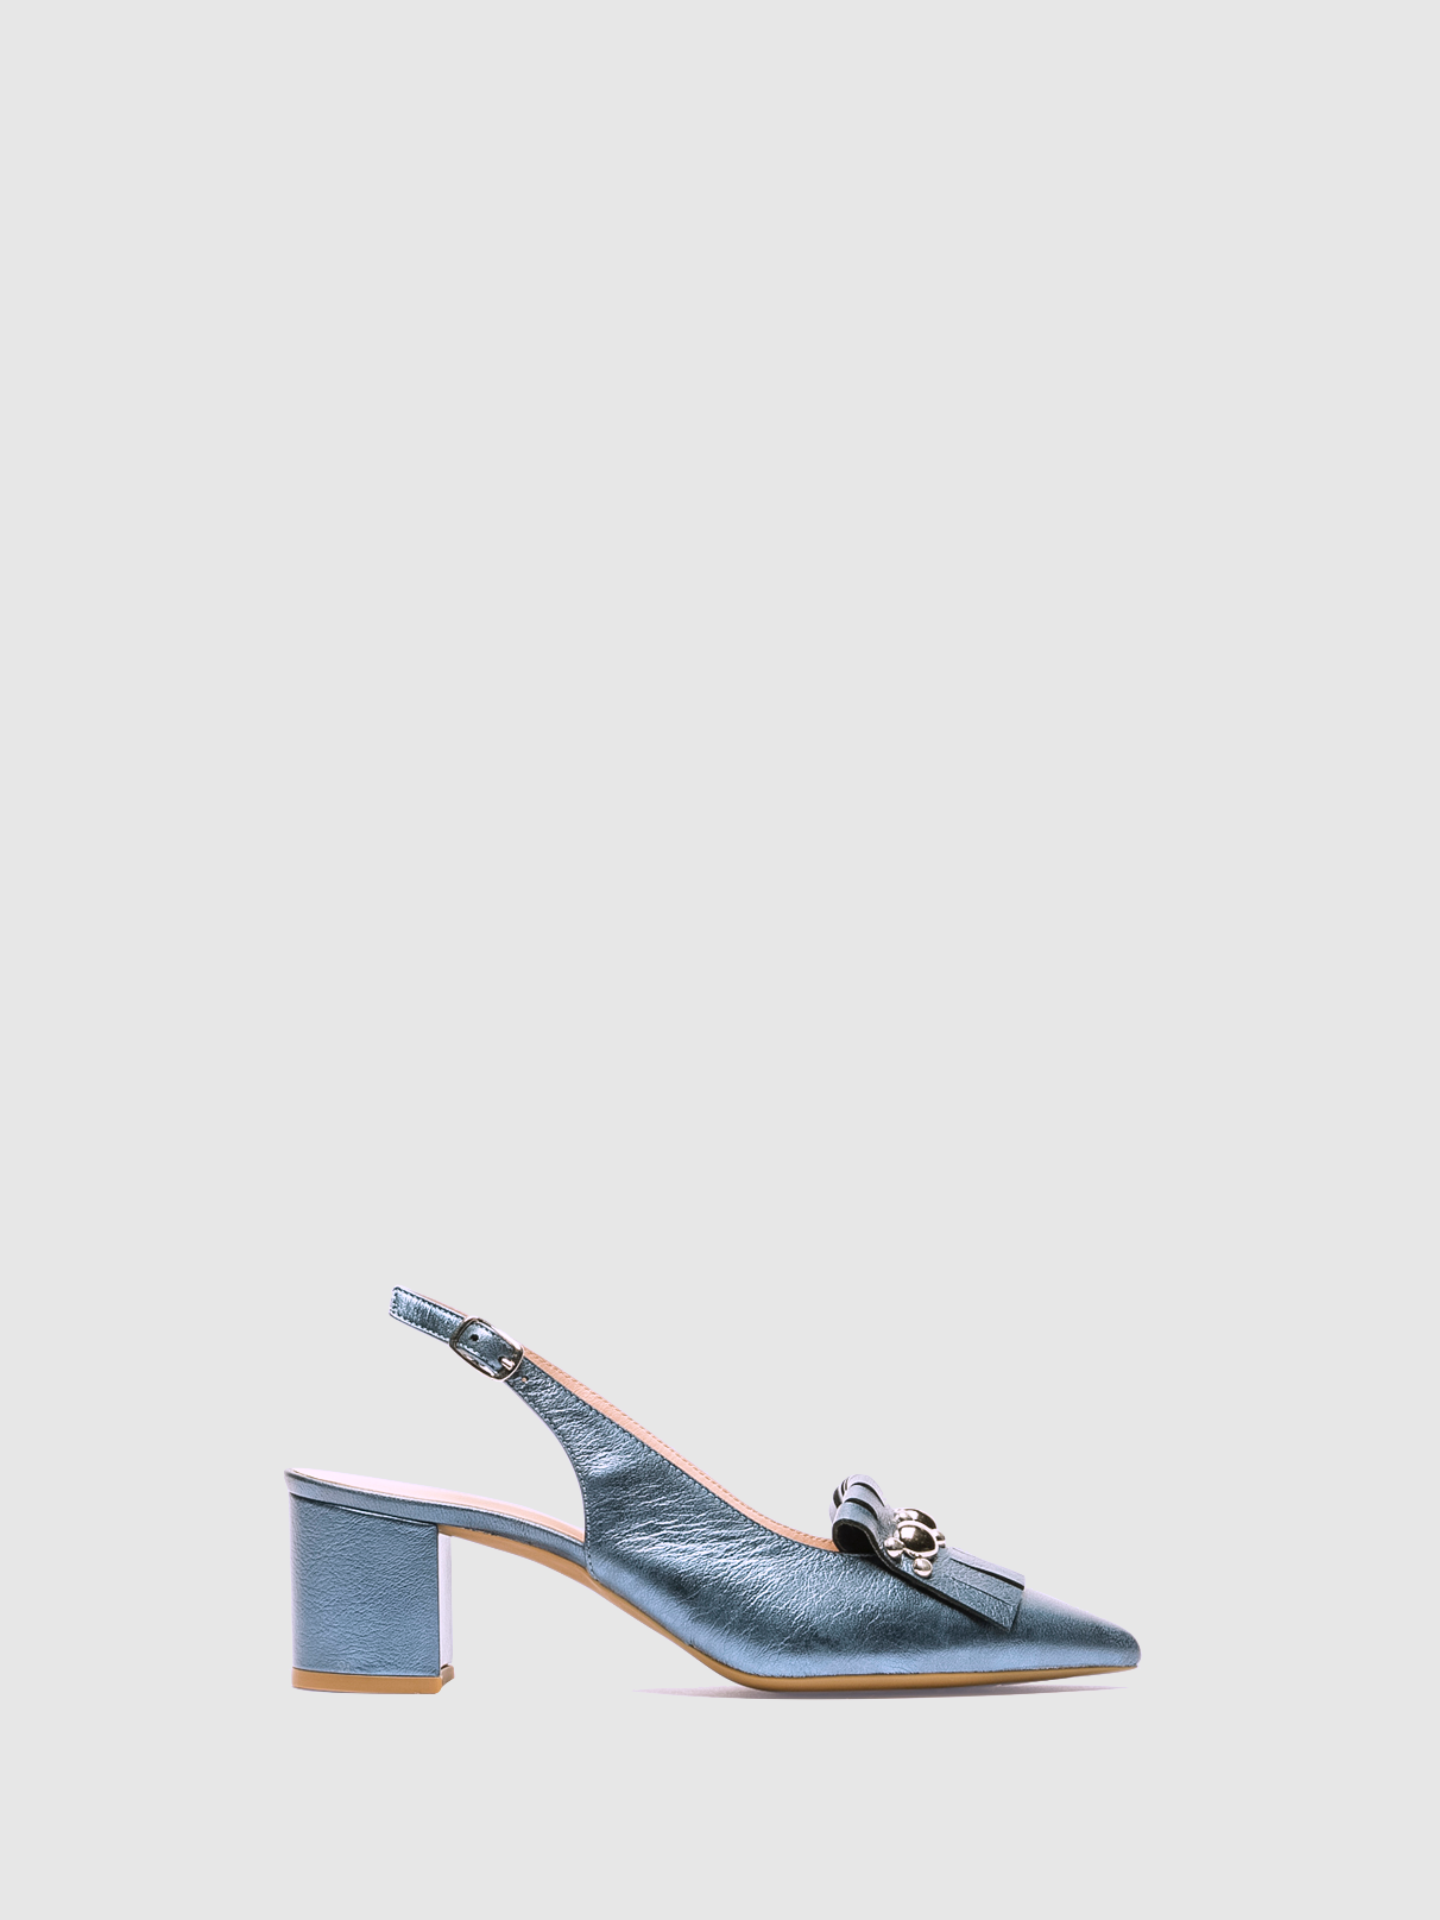 Sofia Costa Sapatos de Salto Alto com Tira no Calcanhar em Azul